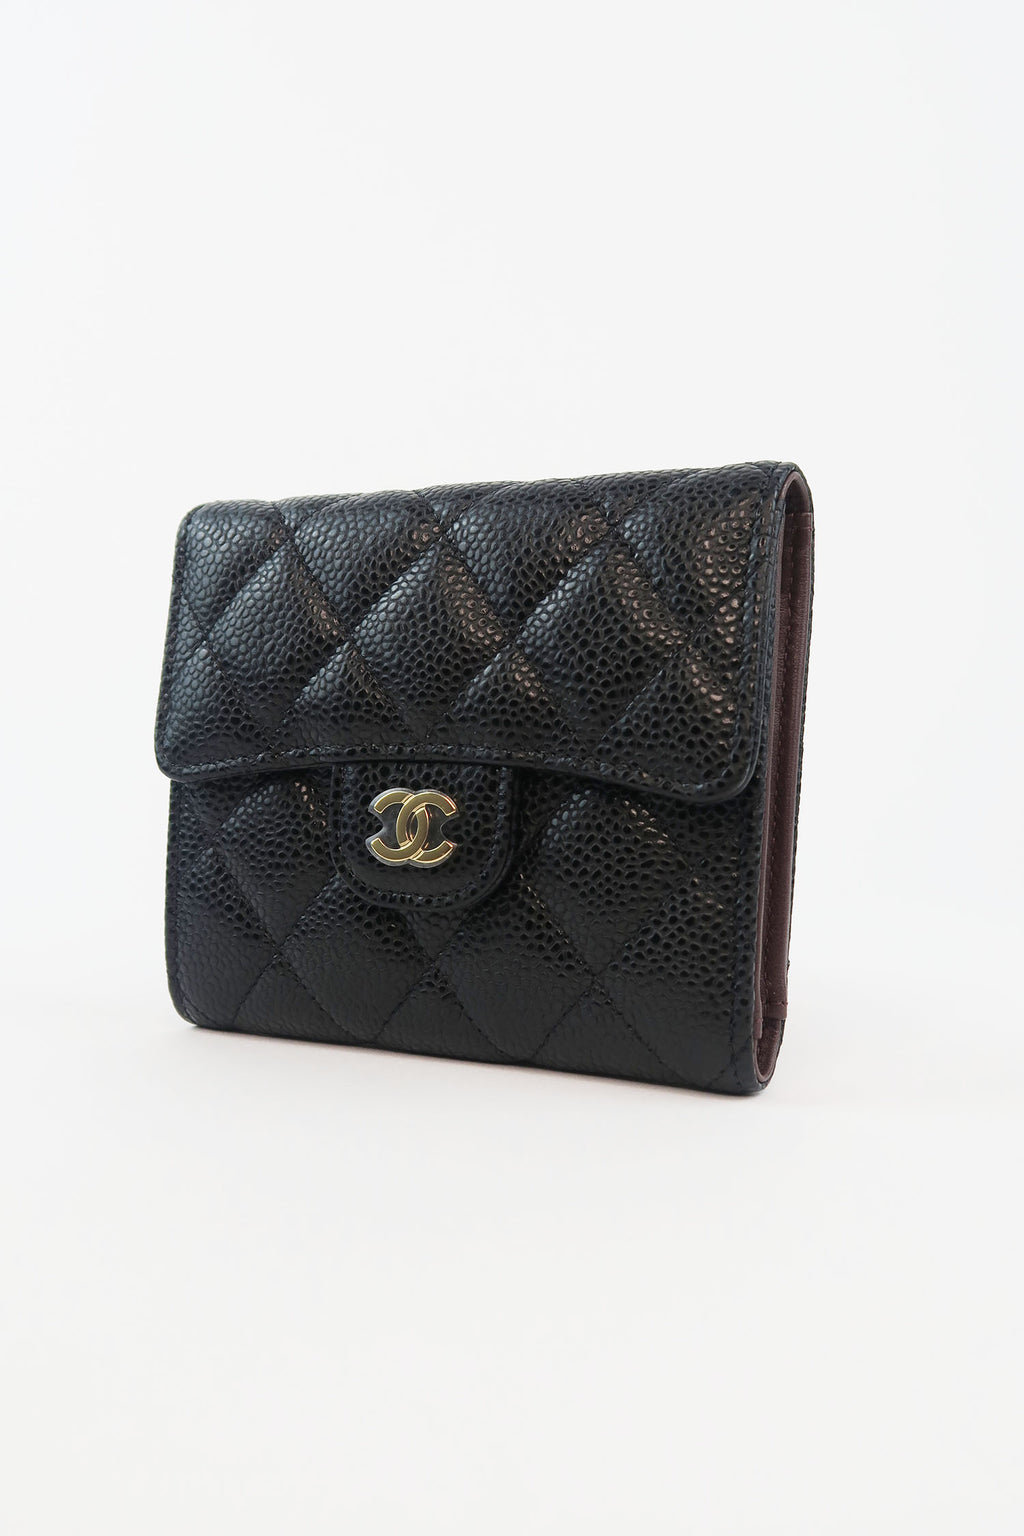 Chanel Black Caviar Small Classic Flap Wallet  myGemma  Item 129029